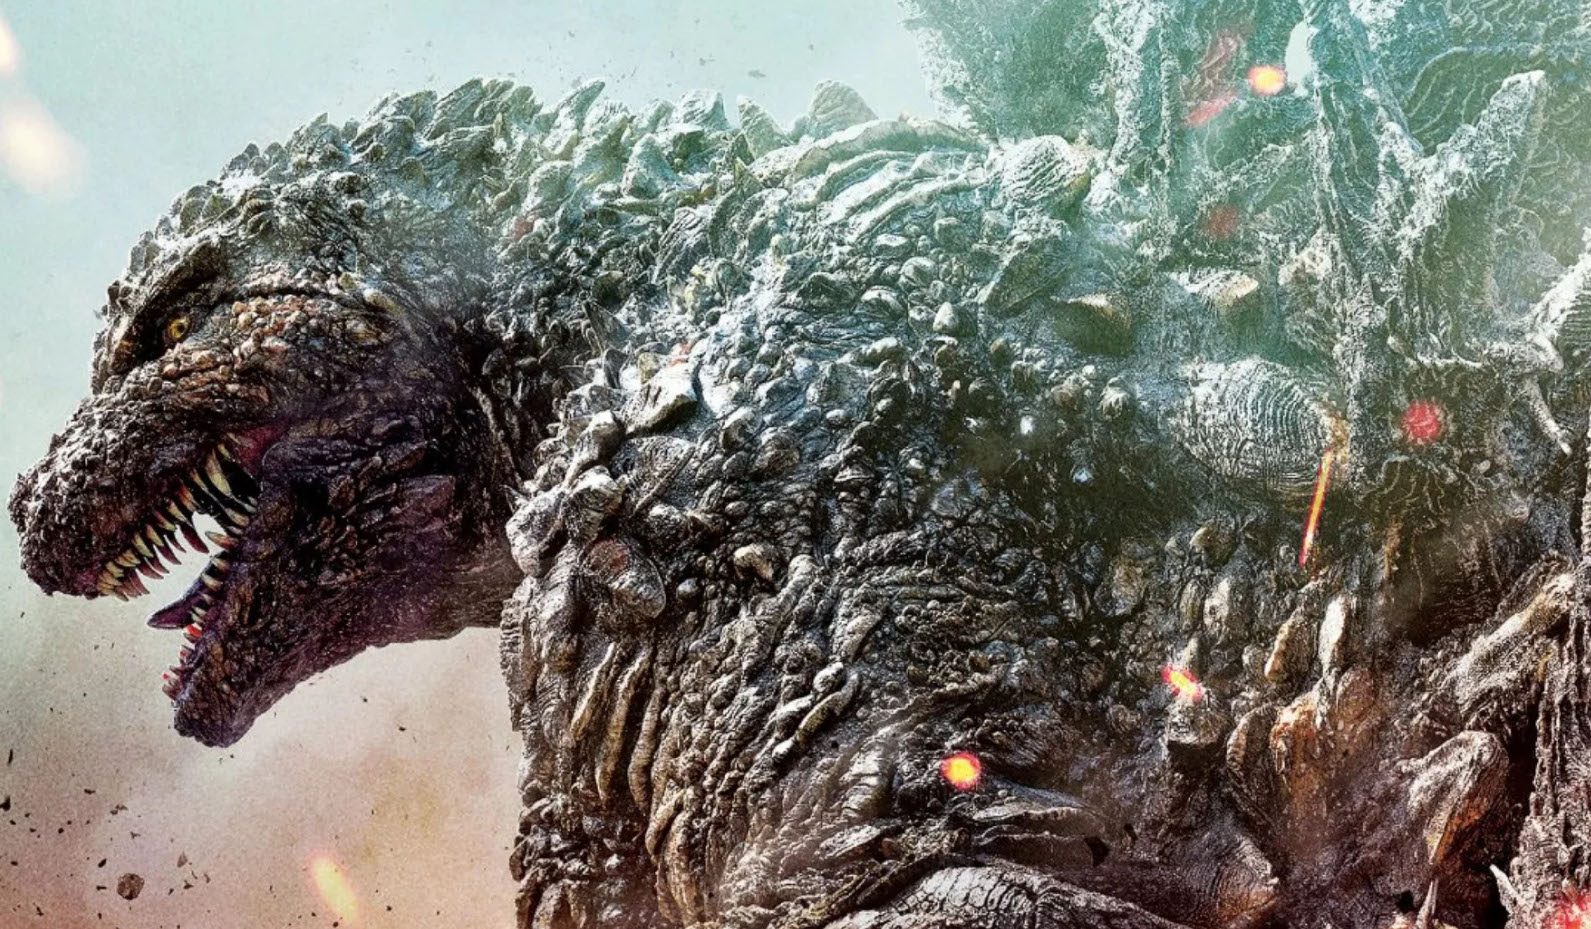  Dall'articolo: Godzilla Minus One, il ritorno del kaiju come monito per l'umanit.